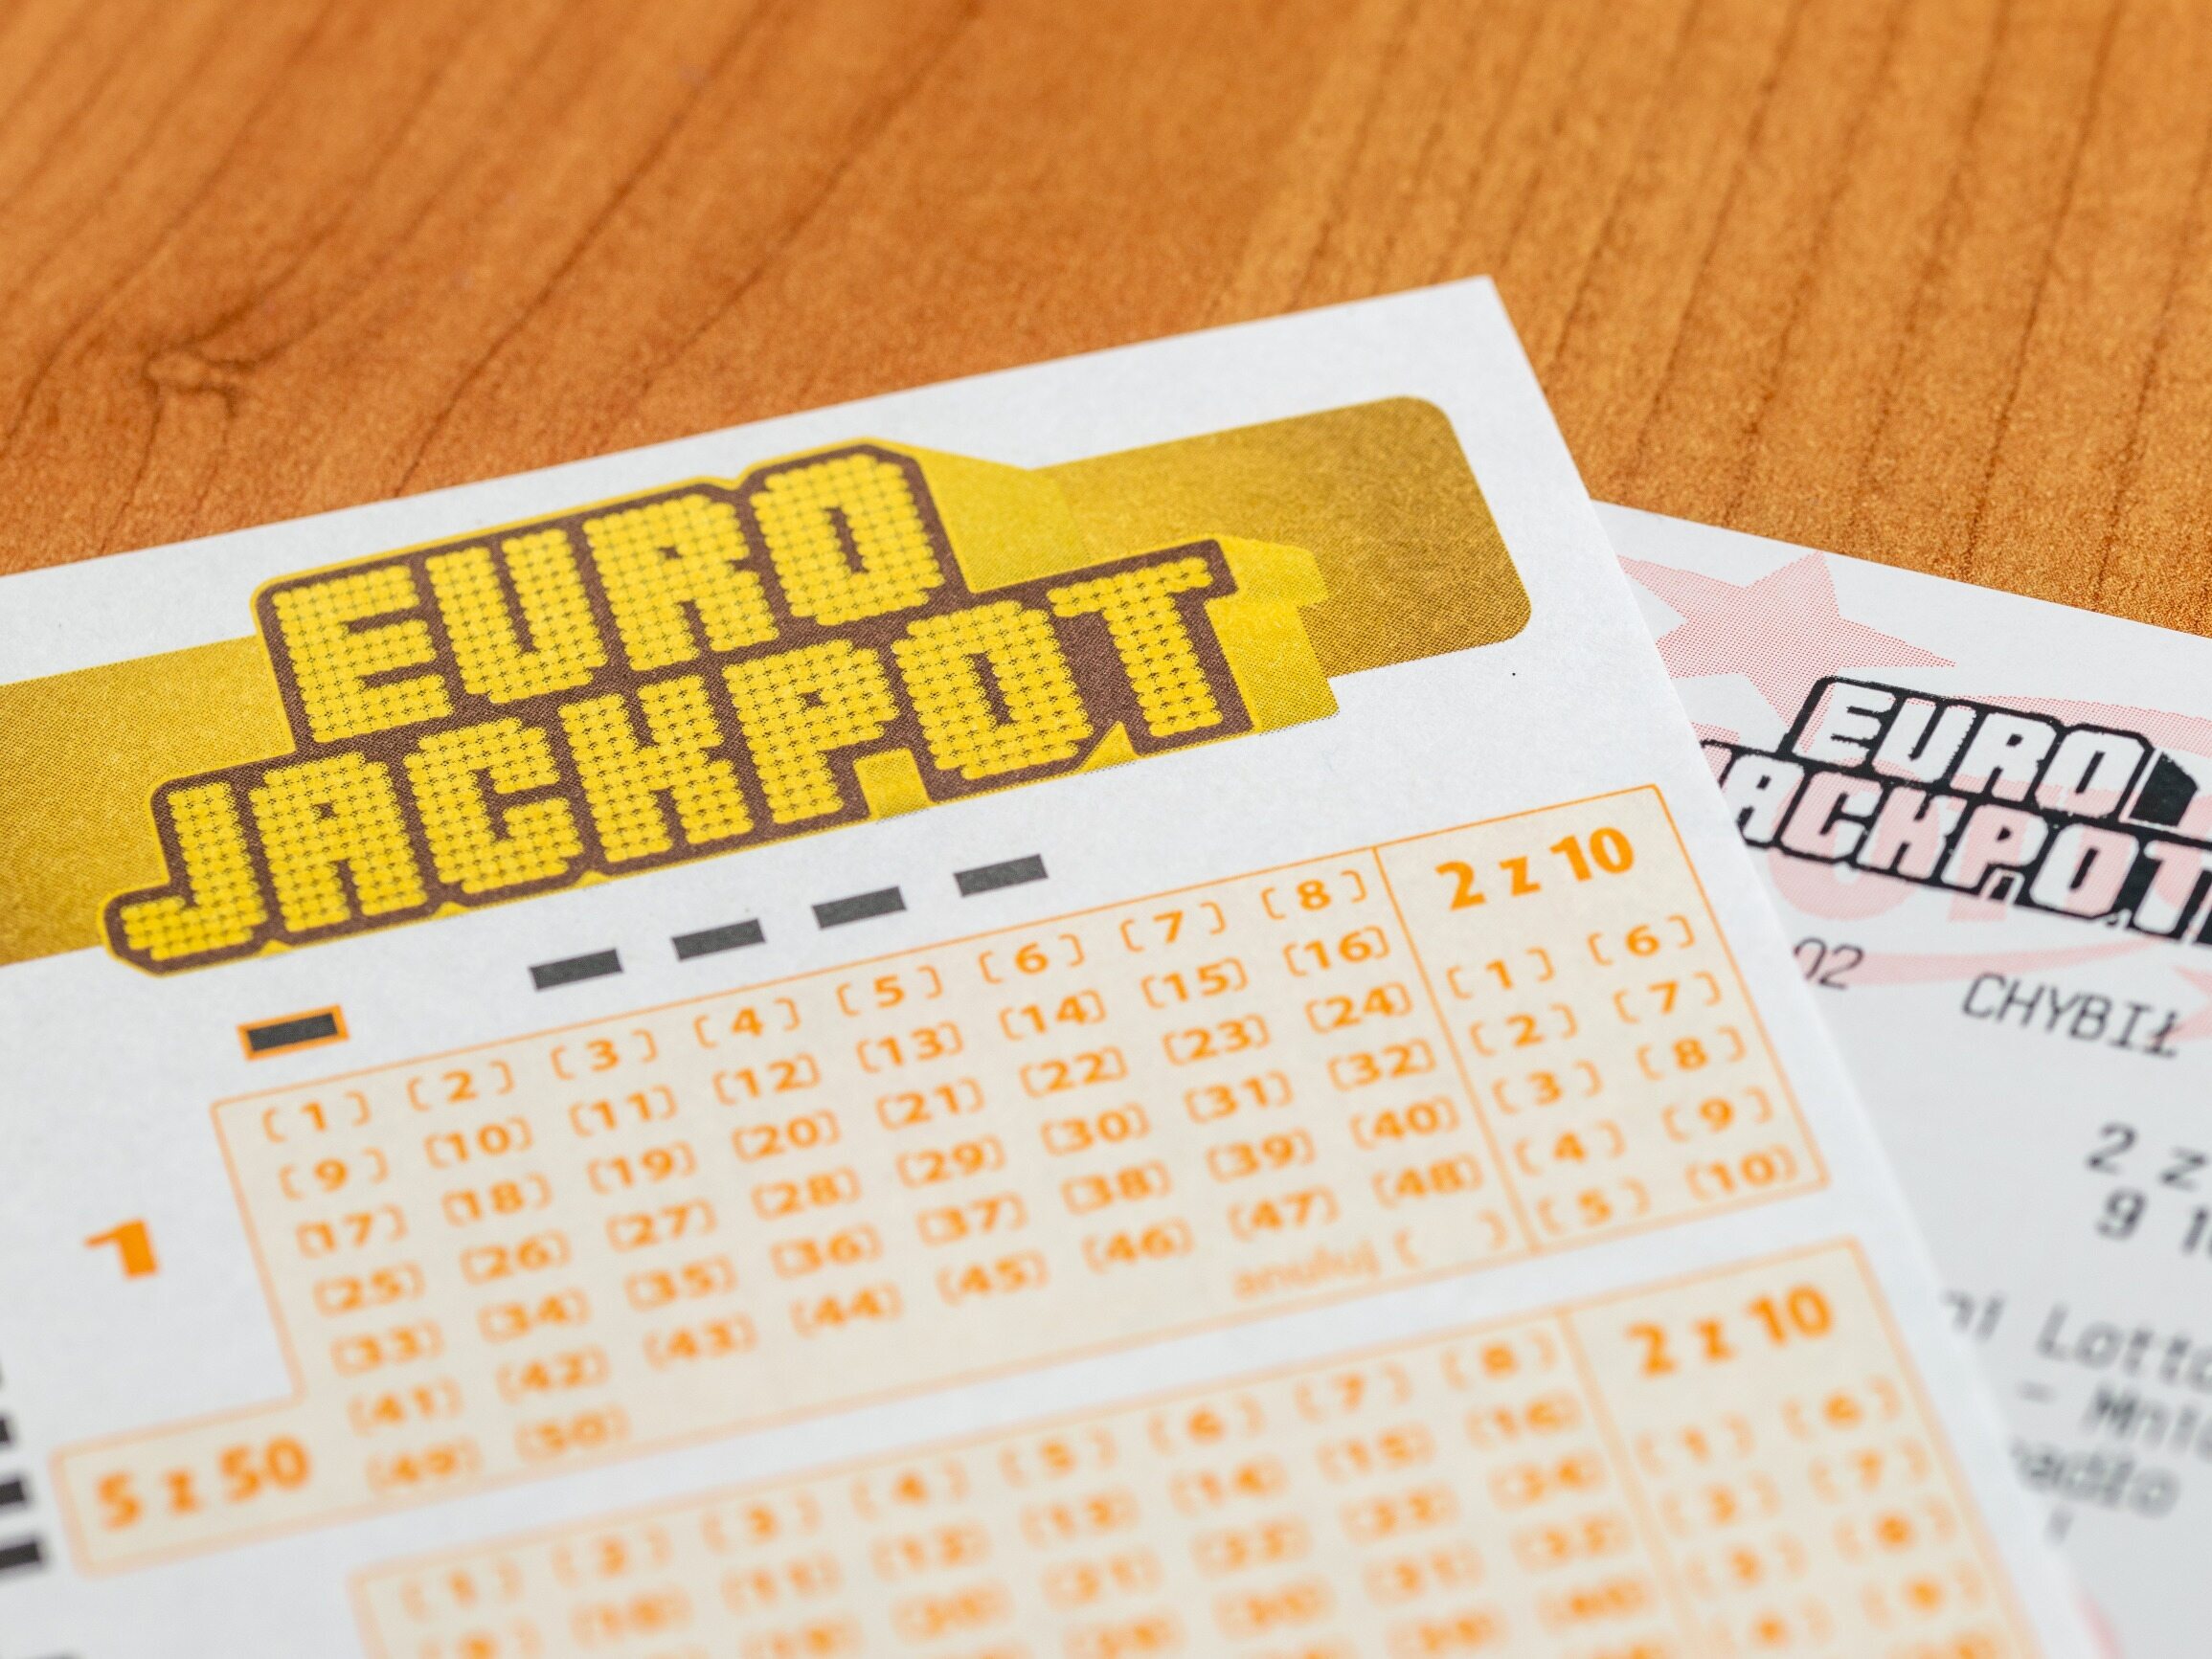 Wyniki losowania Eurojackpot z 22 sierpnia. Do wygrania było 45 mln złotych